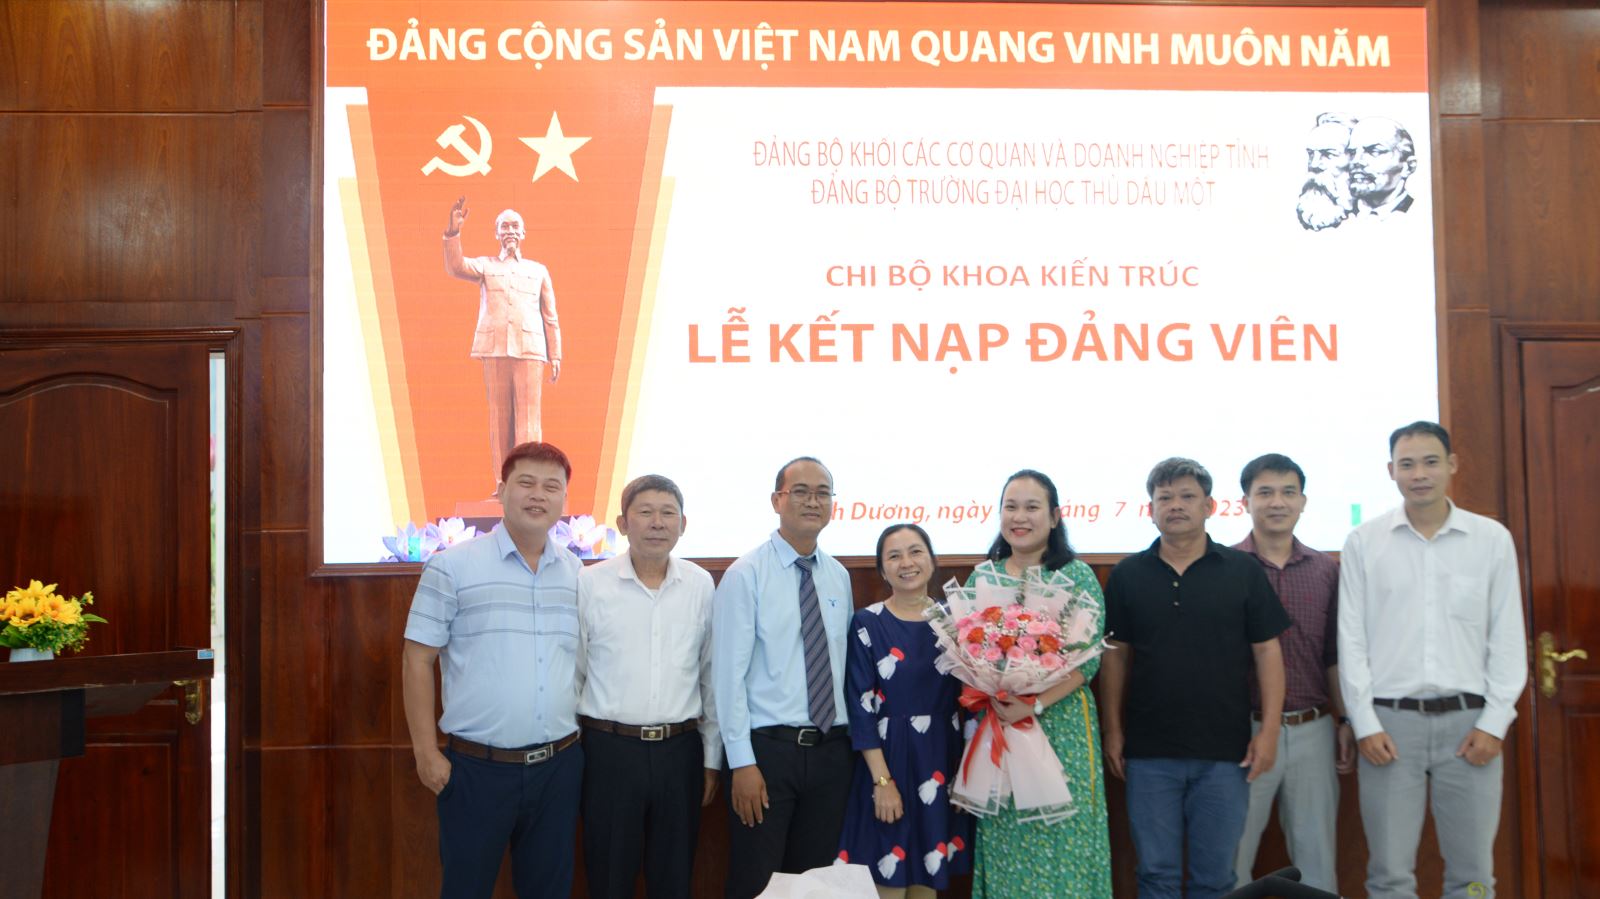 Đoàn viên ưu tú Nguyễn Thị Hằng được vinh dự đứng vào hàng ngũ của Đảng